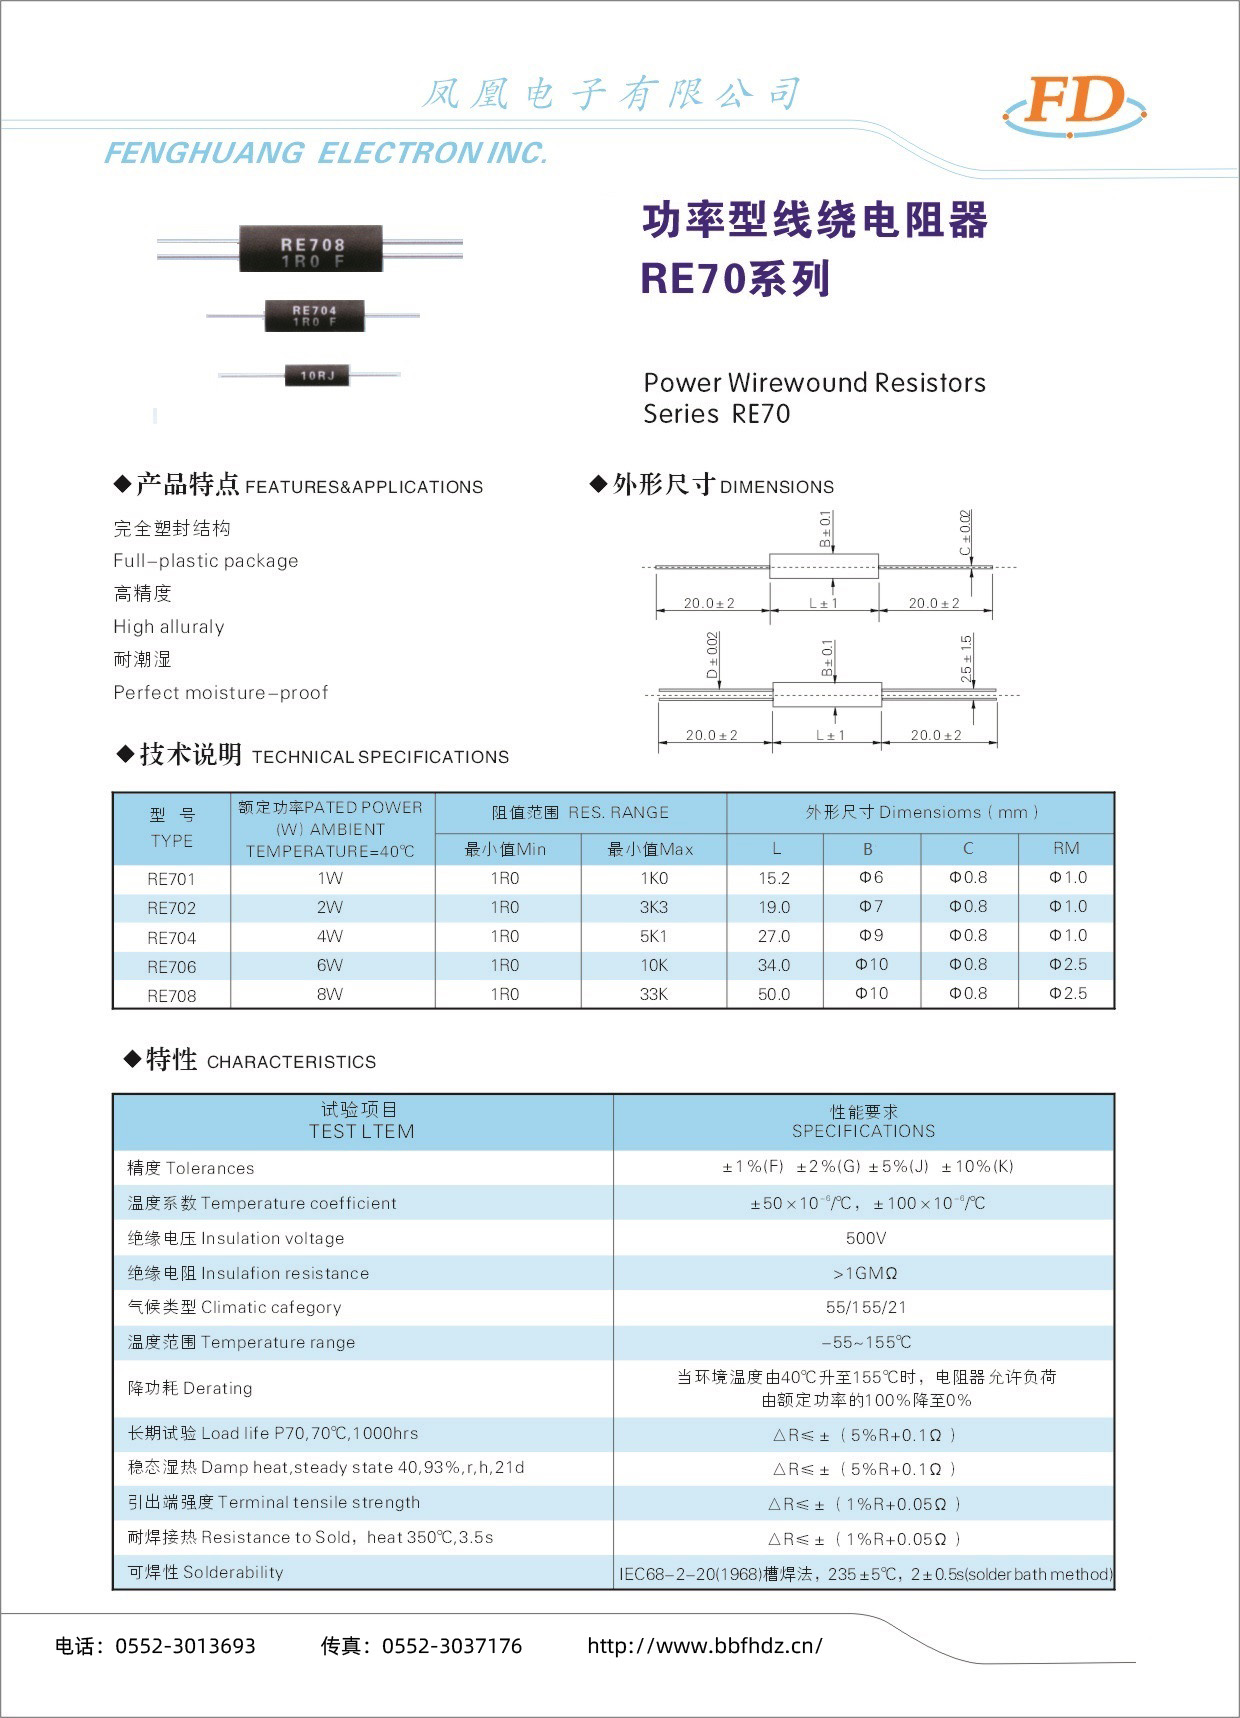 功率型线绕电阻器RE70系列-1.jpg